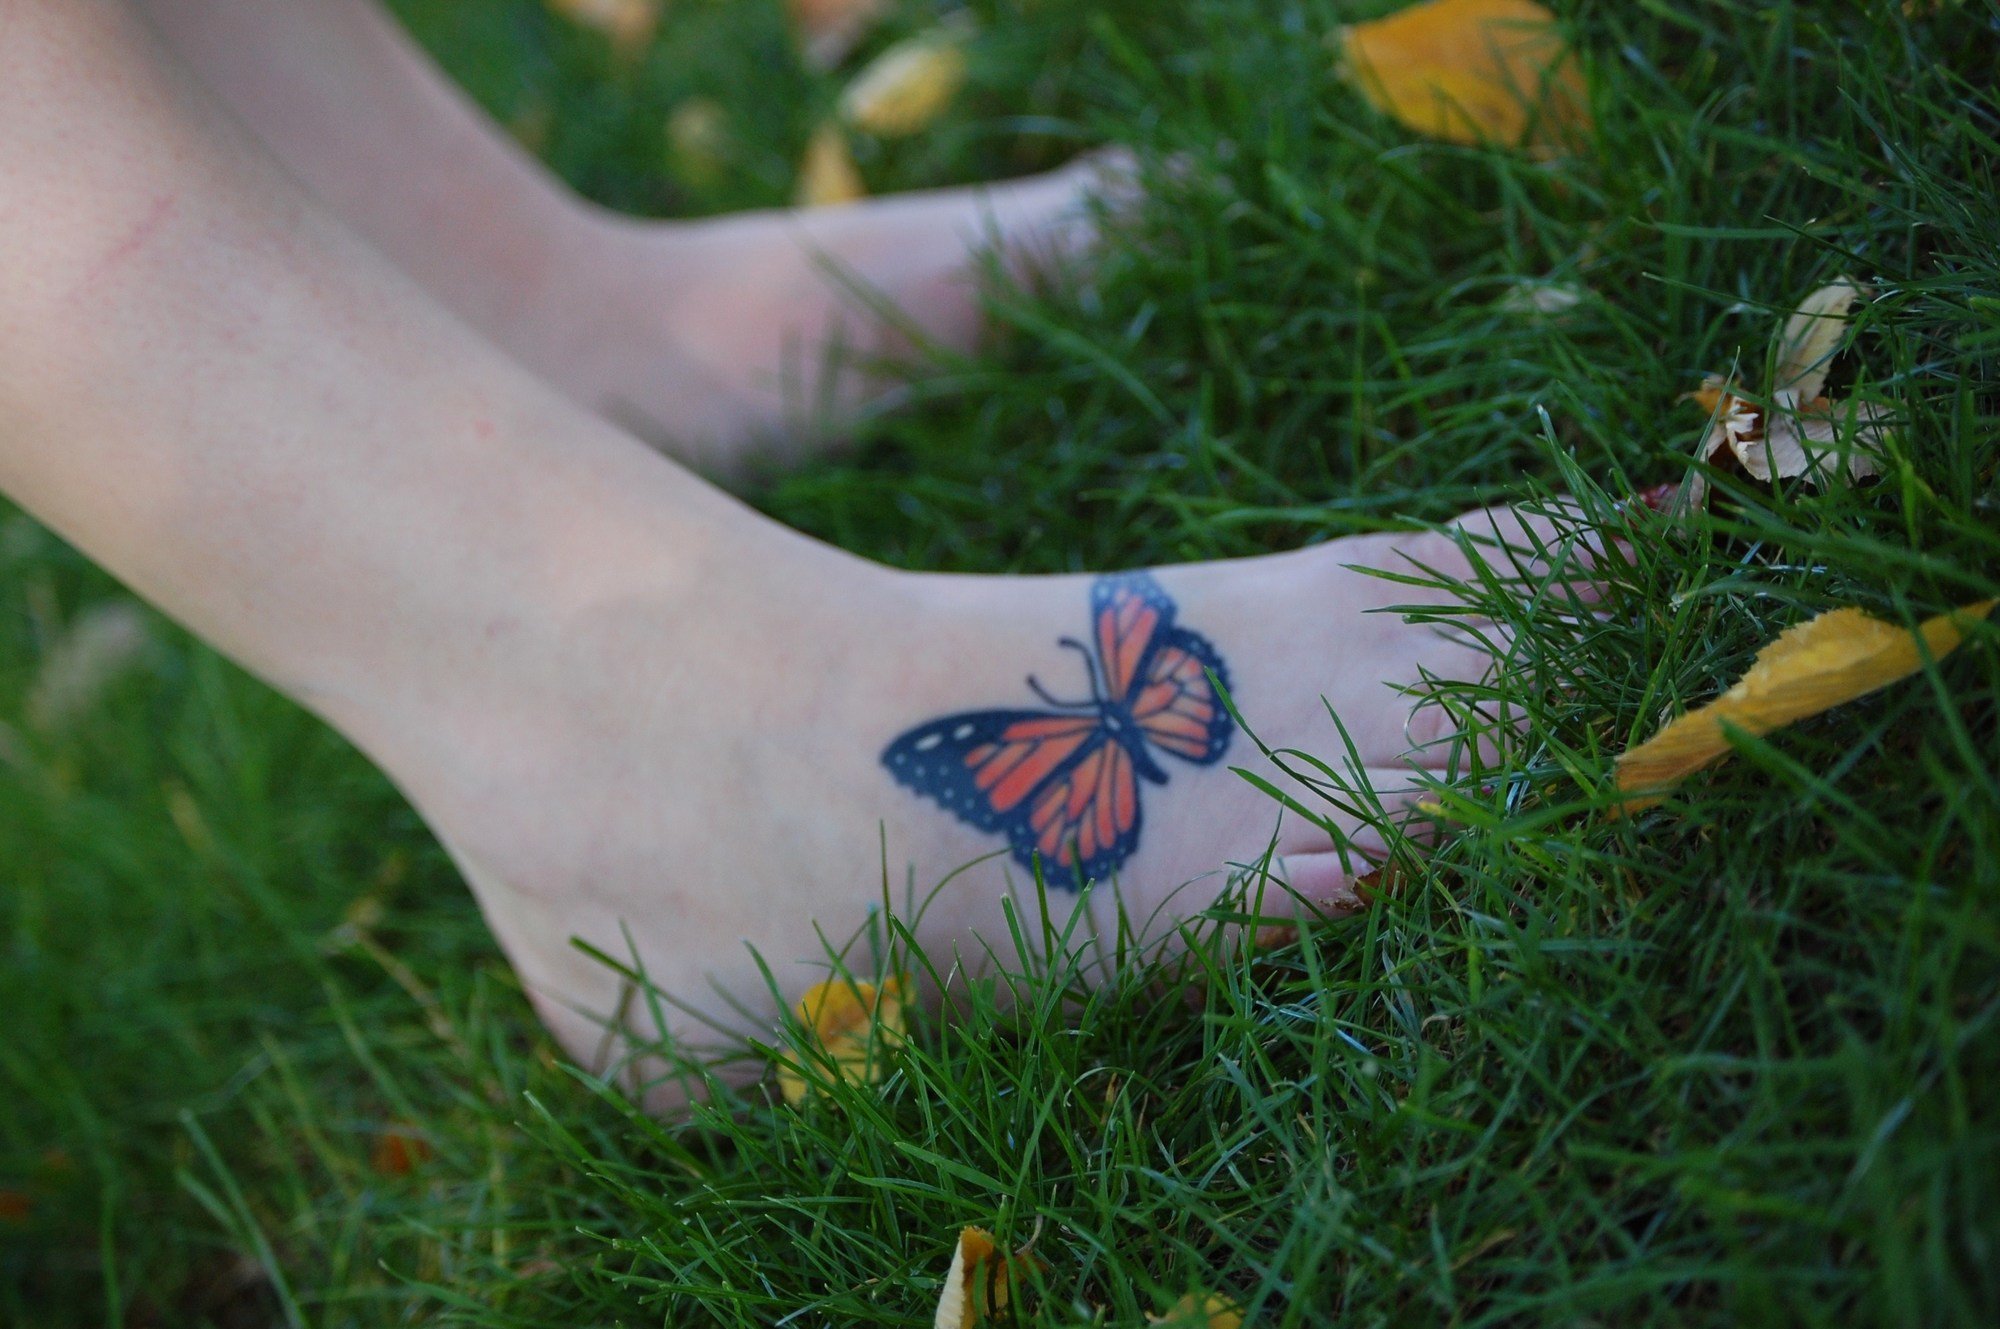 Explore the 50 Best Moth Tattoo Ideas 2019  Tattoodo